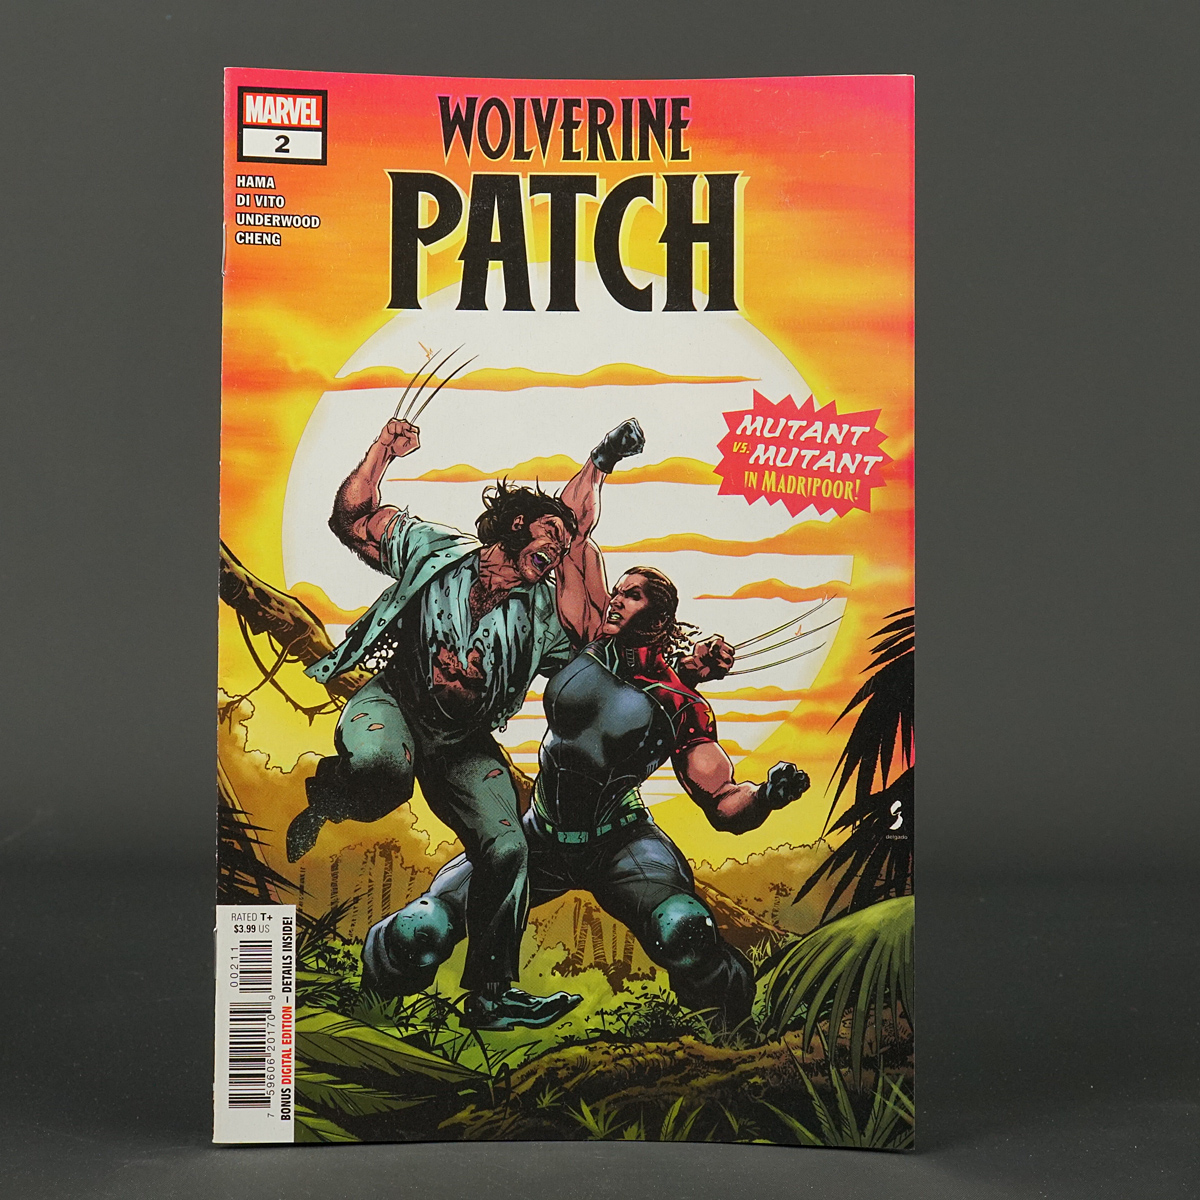 Wolverine PATCH #2 Marvel Comics 2022 FEB220942 (CA) Shaw (W) Hama (A) Di Vito